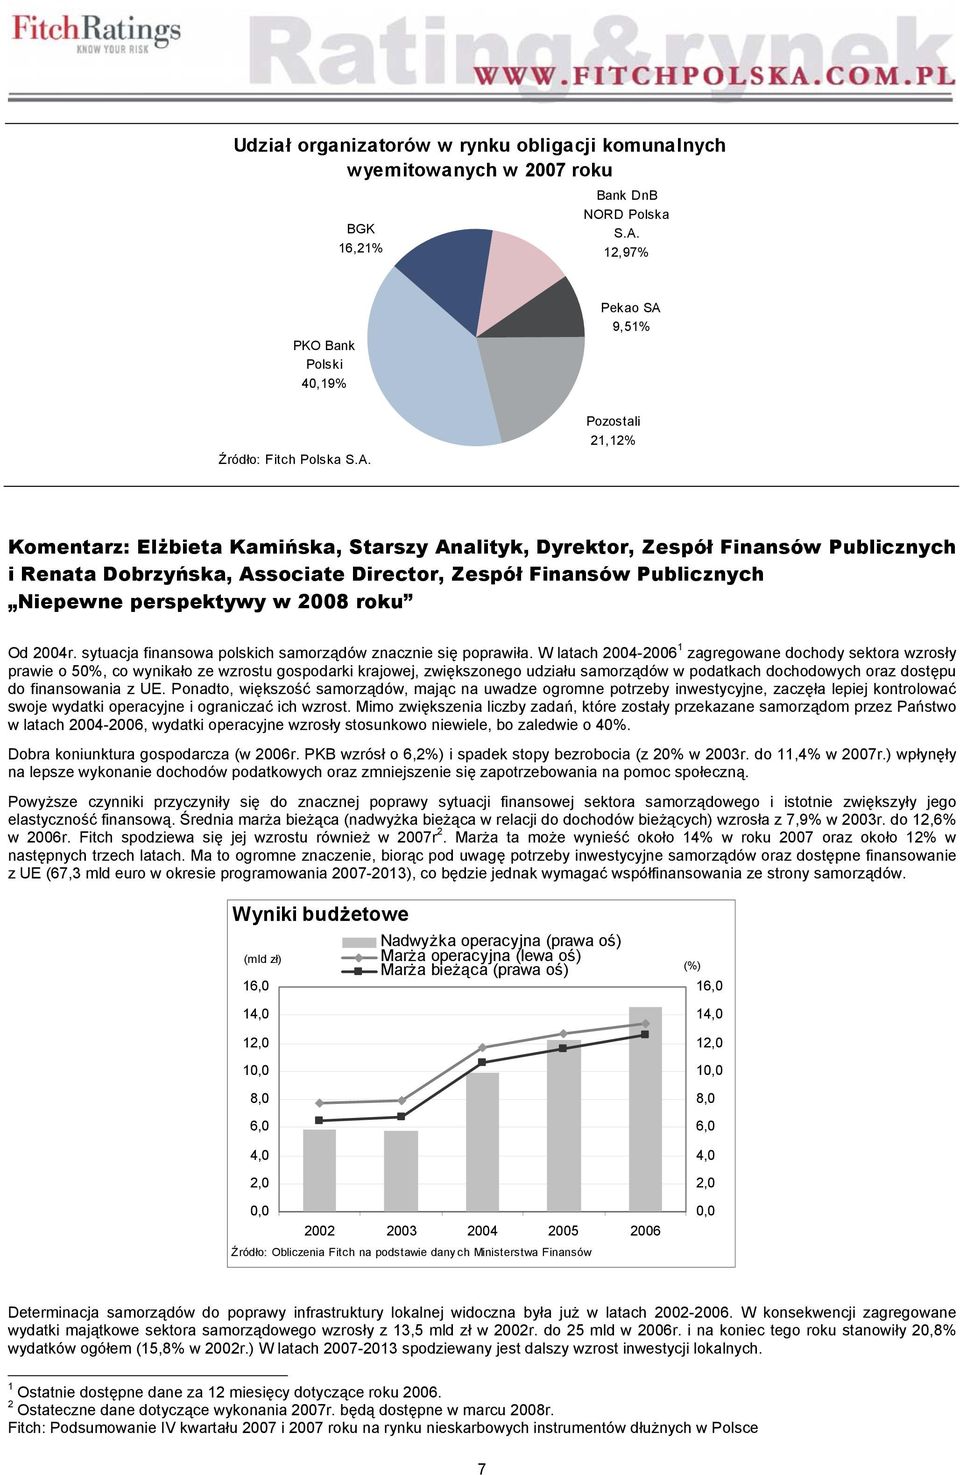 Niepewne perspektywy w 2008 roku Od 2004r. sytuacja finansowa polskich samorządów znacznie się poprawiła.